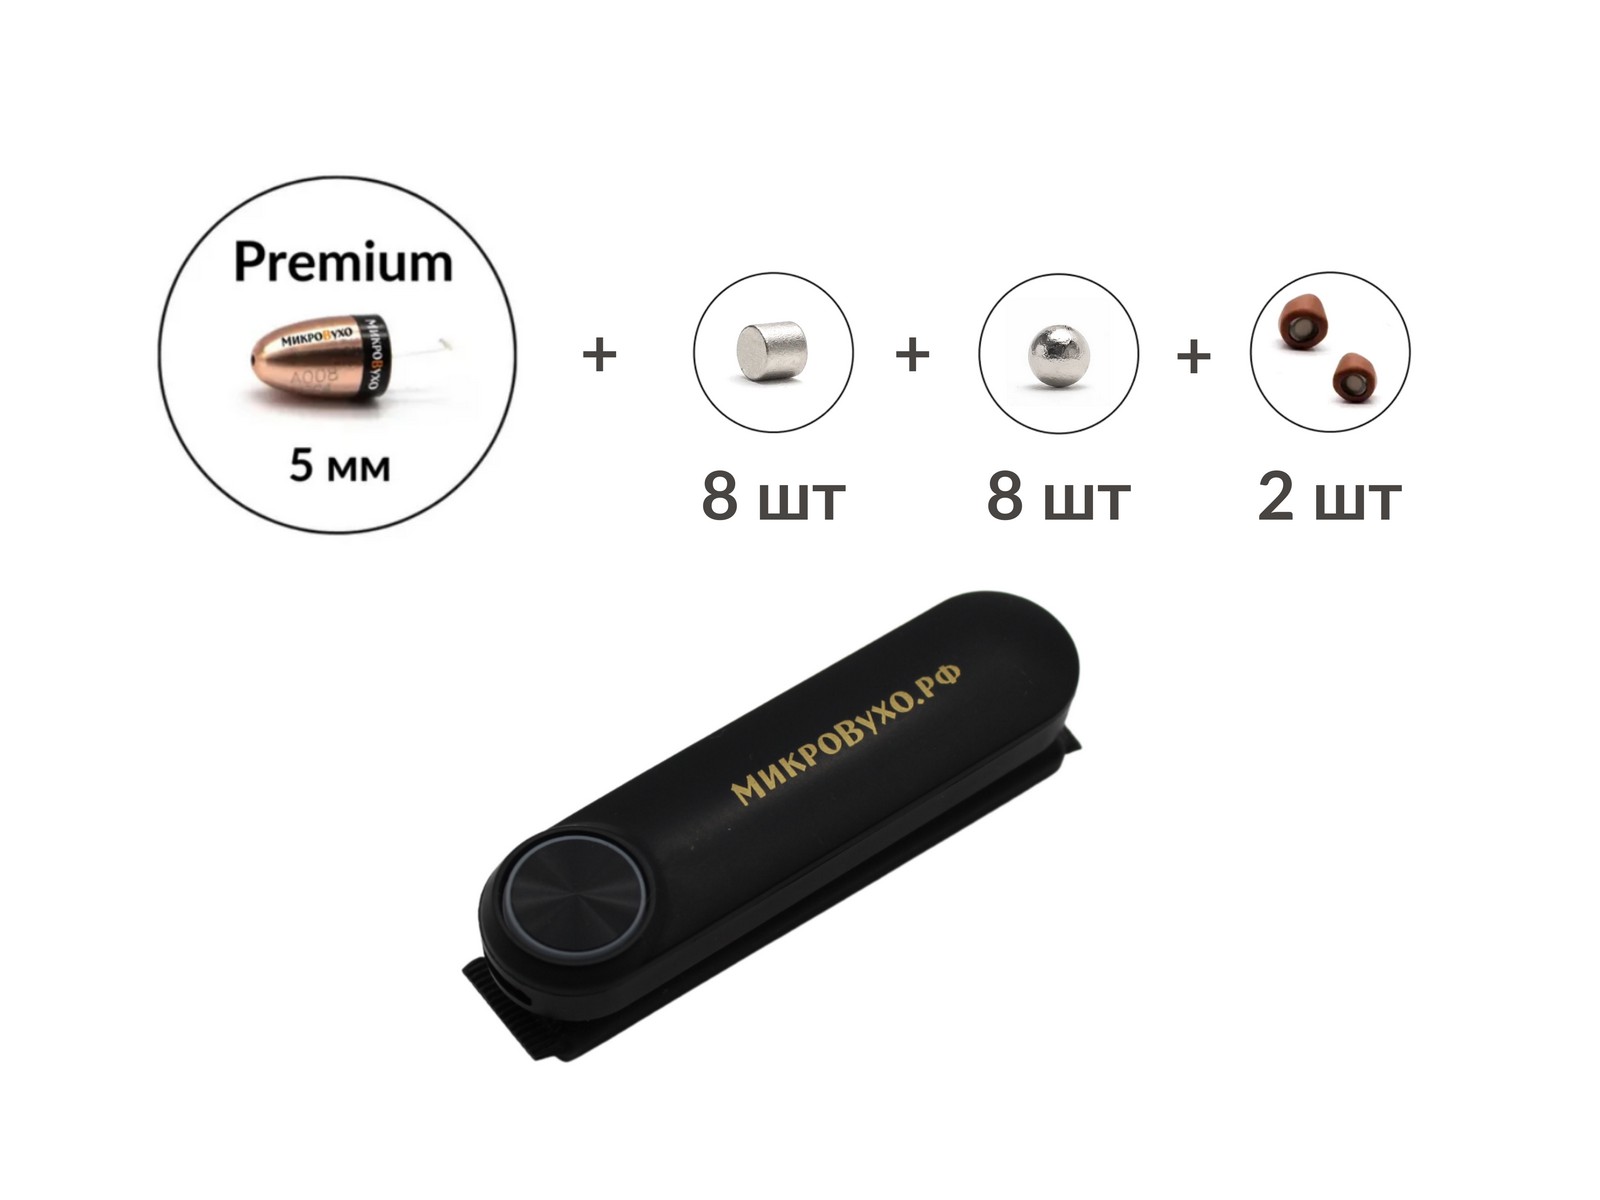 Универсальная гарнитура Bluetooth Box Standard Plus с капсулой Premium и магнитами 2 мм 1